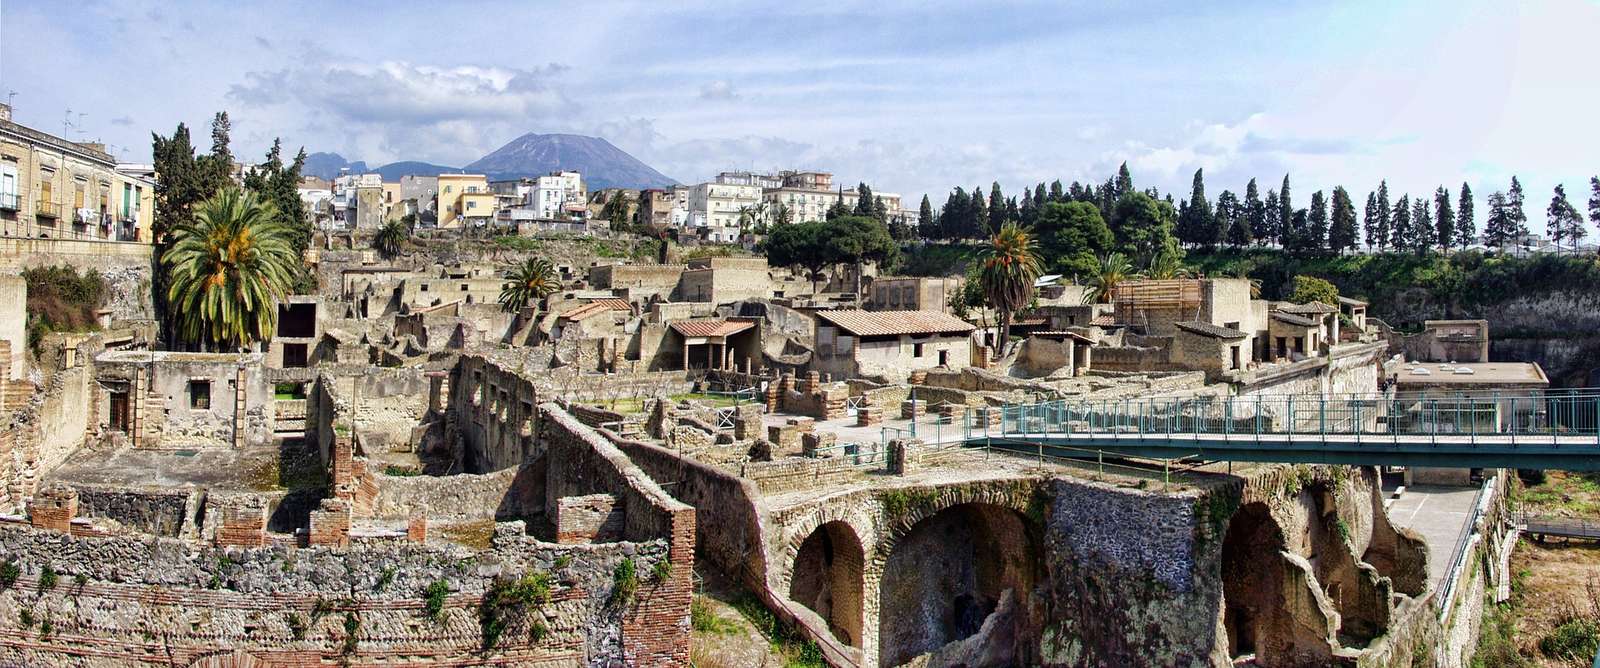 розкопки геркуланума в Неаполі пазл онлайн